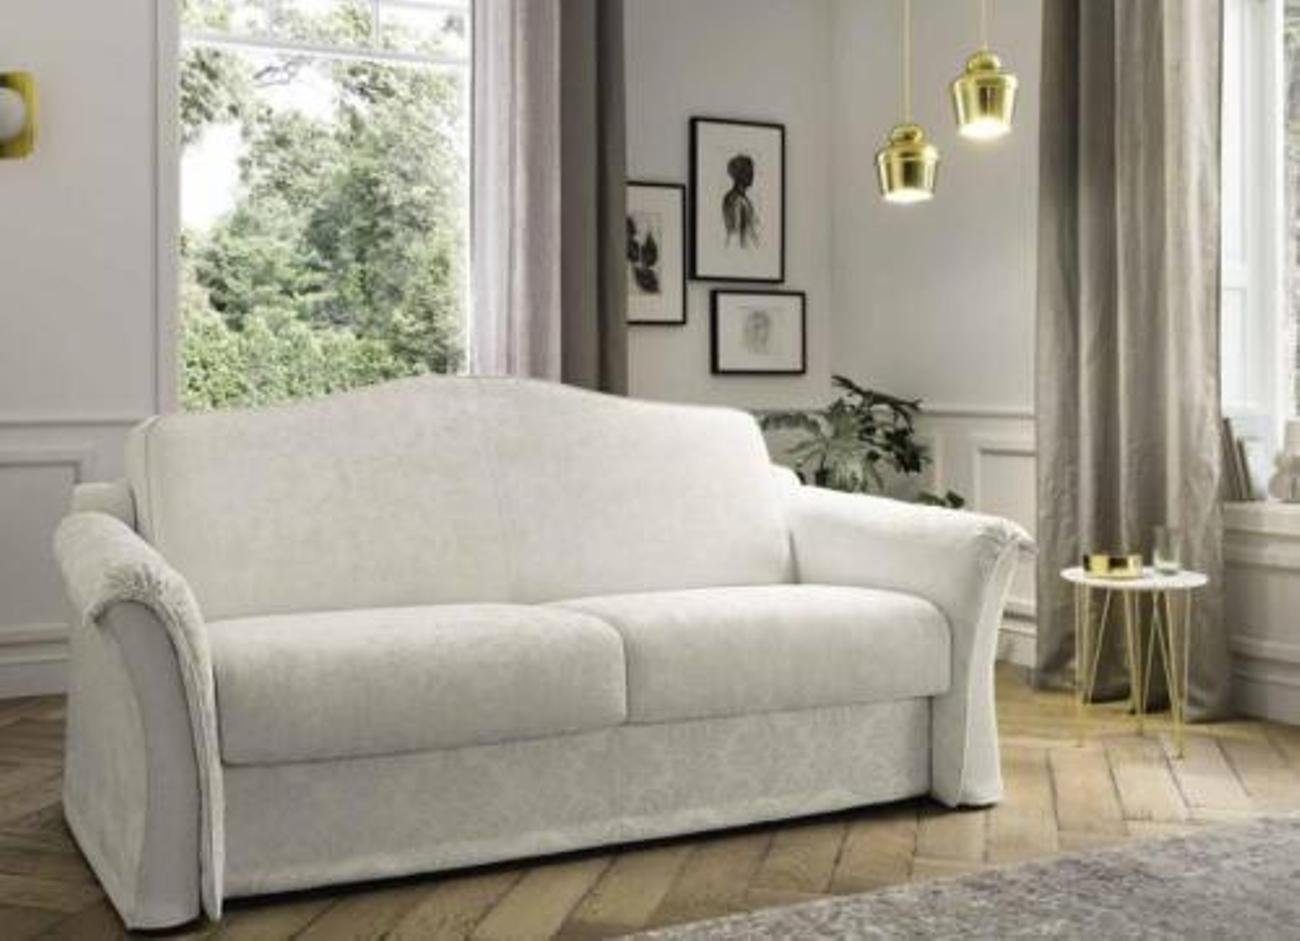 JVmoebel 2-Sitzer Zweisitzer Textilsofa Italienischer Stil Wohnzimmer Designer Sofa, Made in Europe